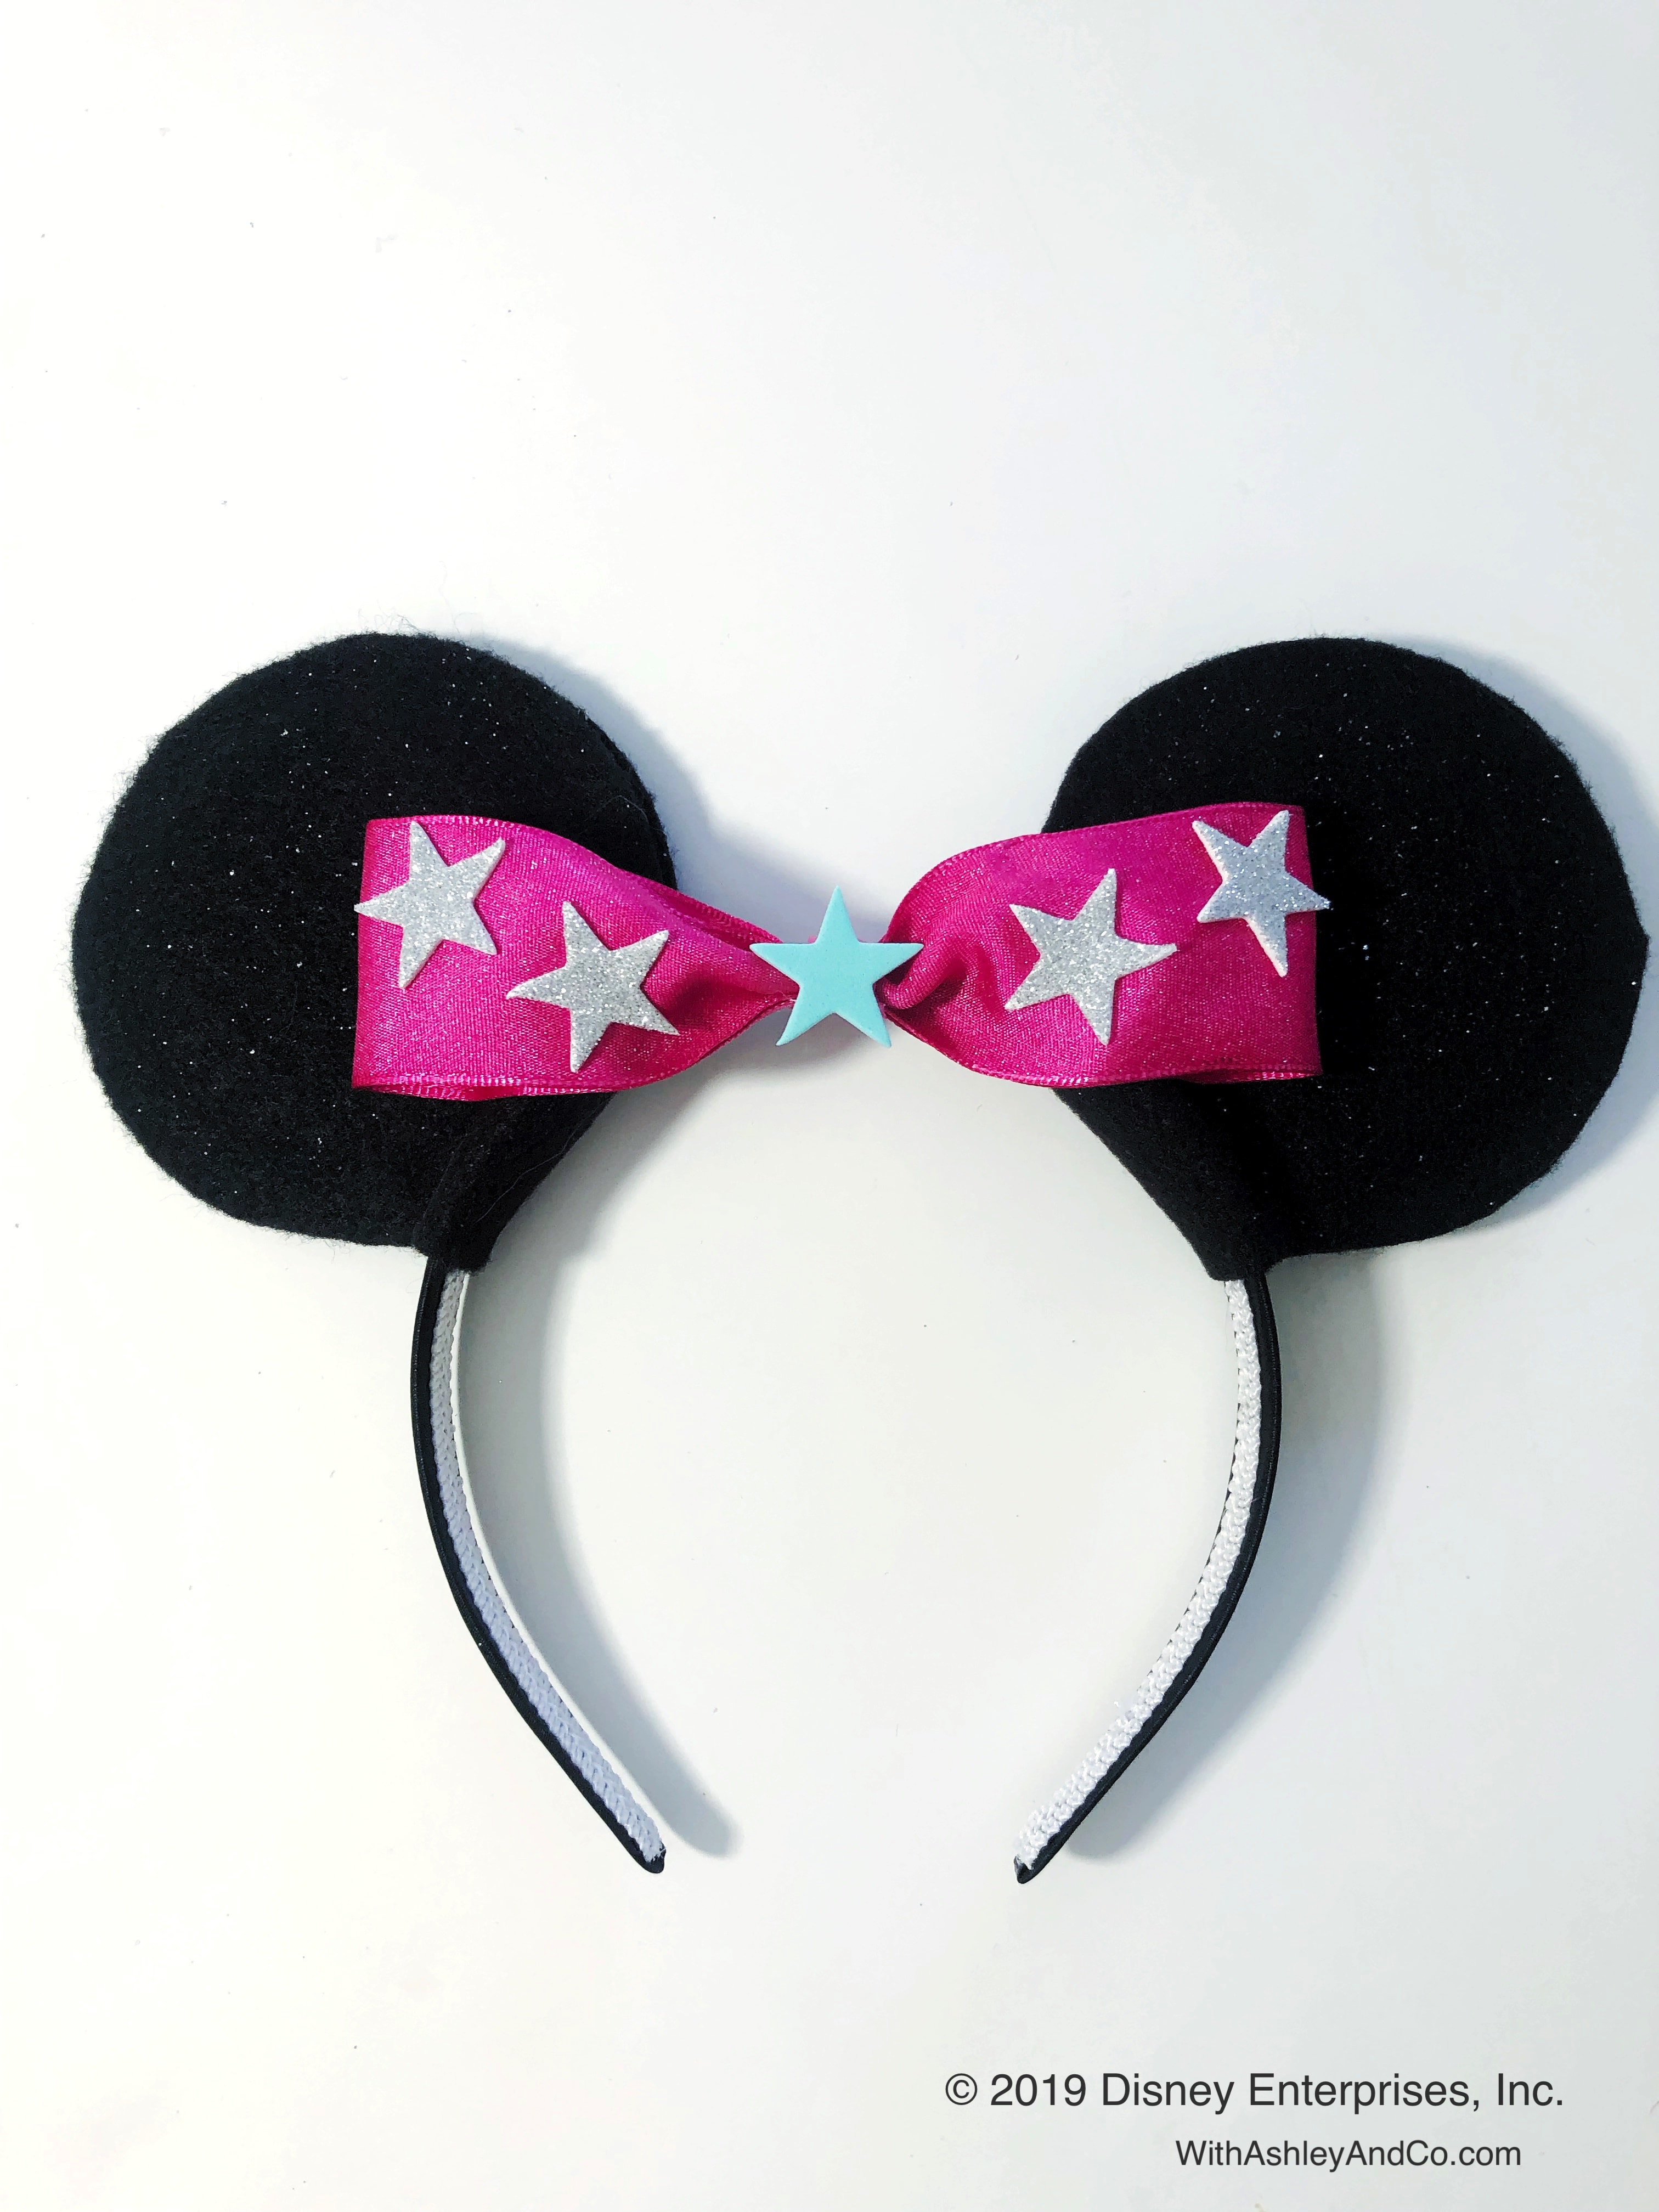 Minnie Mouse Bow Be Mine DIY Minnie Ears